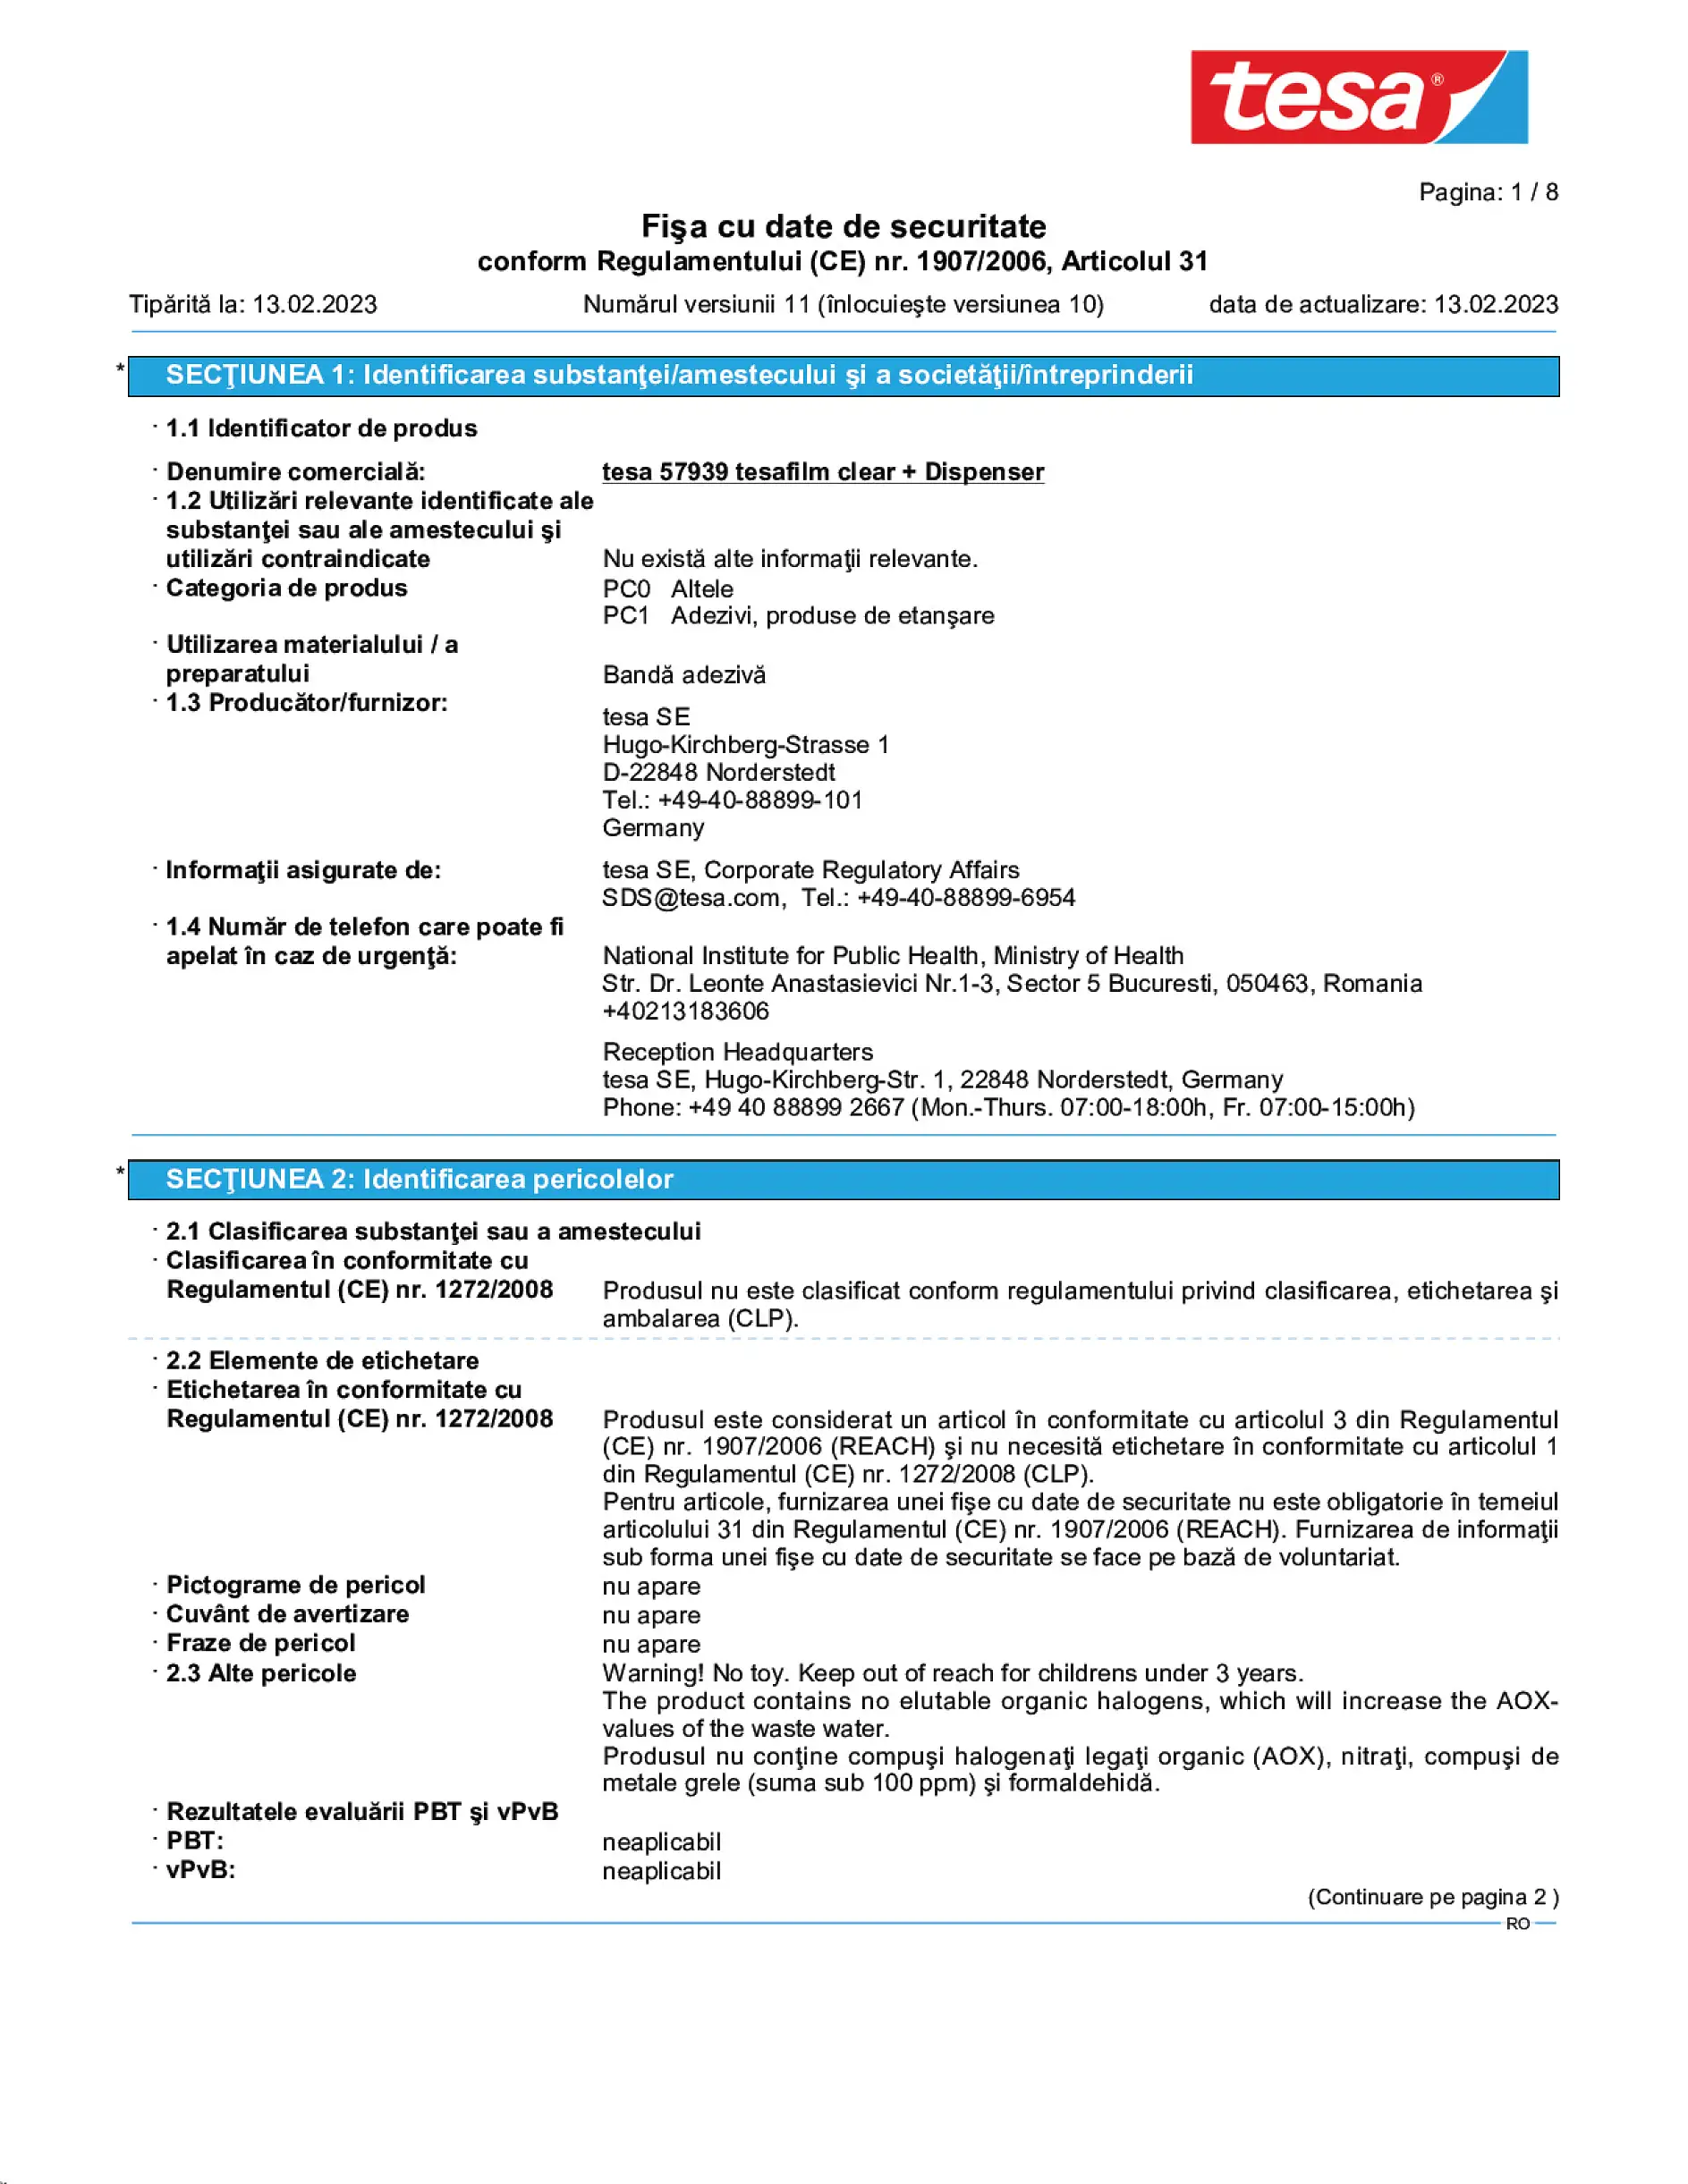 Safety data sheet_tesafilm® 57928_ro-RO_v11